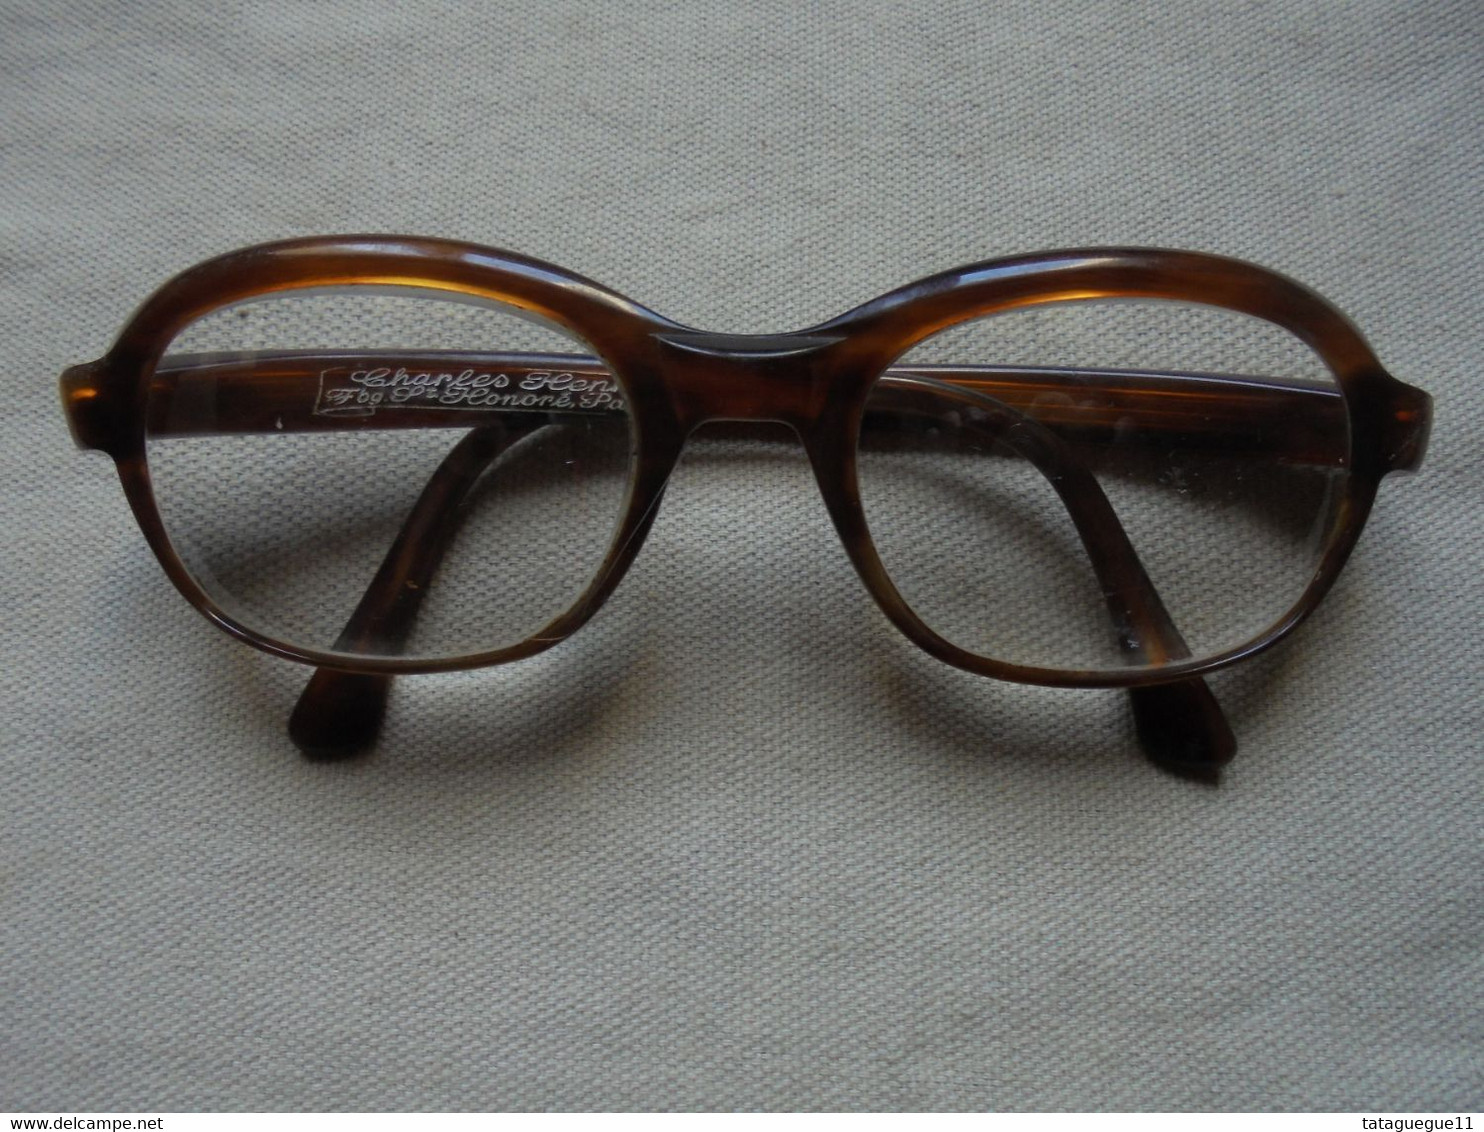 Vintage - Paire De Lunettes De Vue Charles Henry Faubourg St Honorè Paris Femme - Glasses